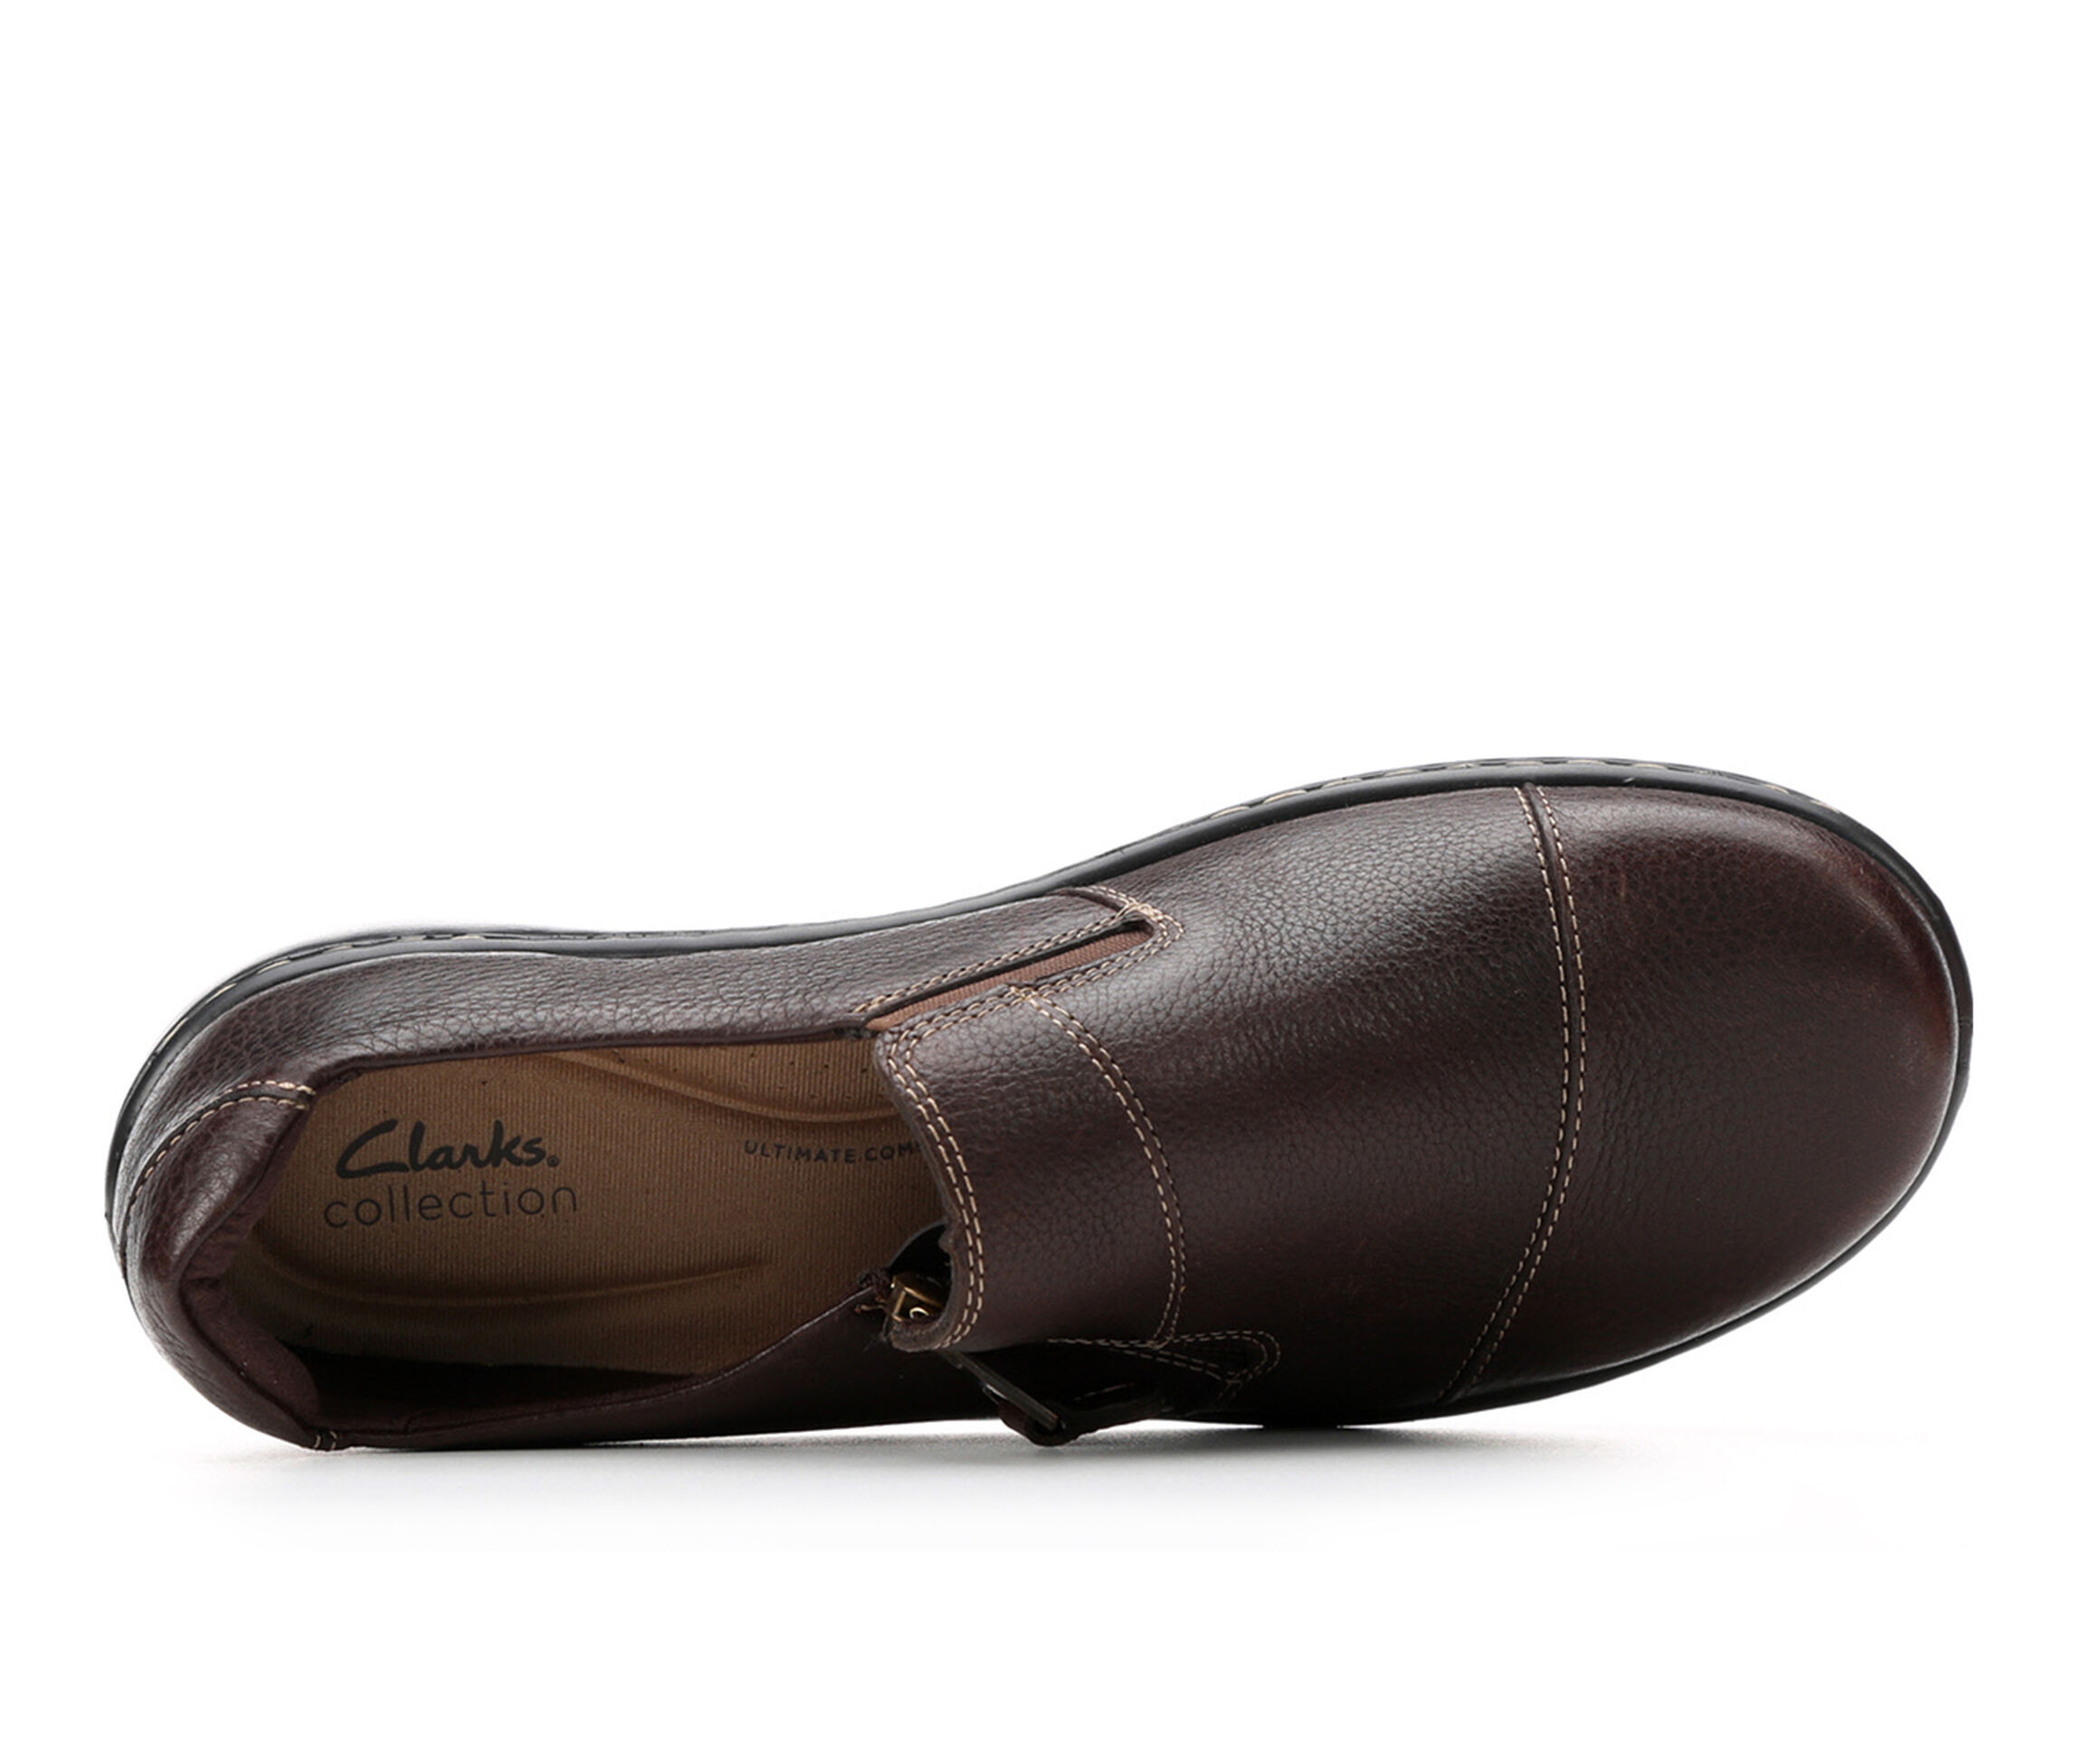 Duplikere Grænseværdi samarbejde Shop Clarks Shoes, Sandals & Boots | Shoe Carnival